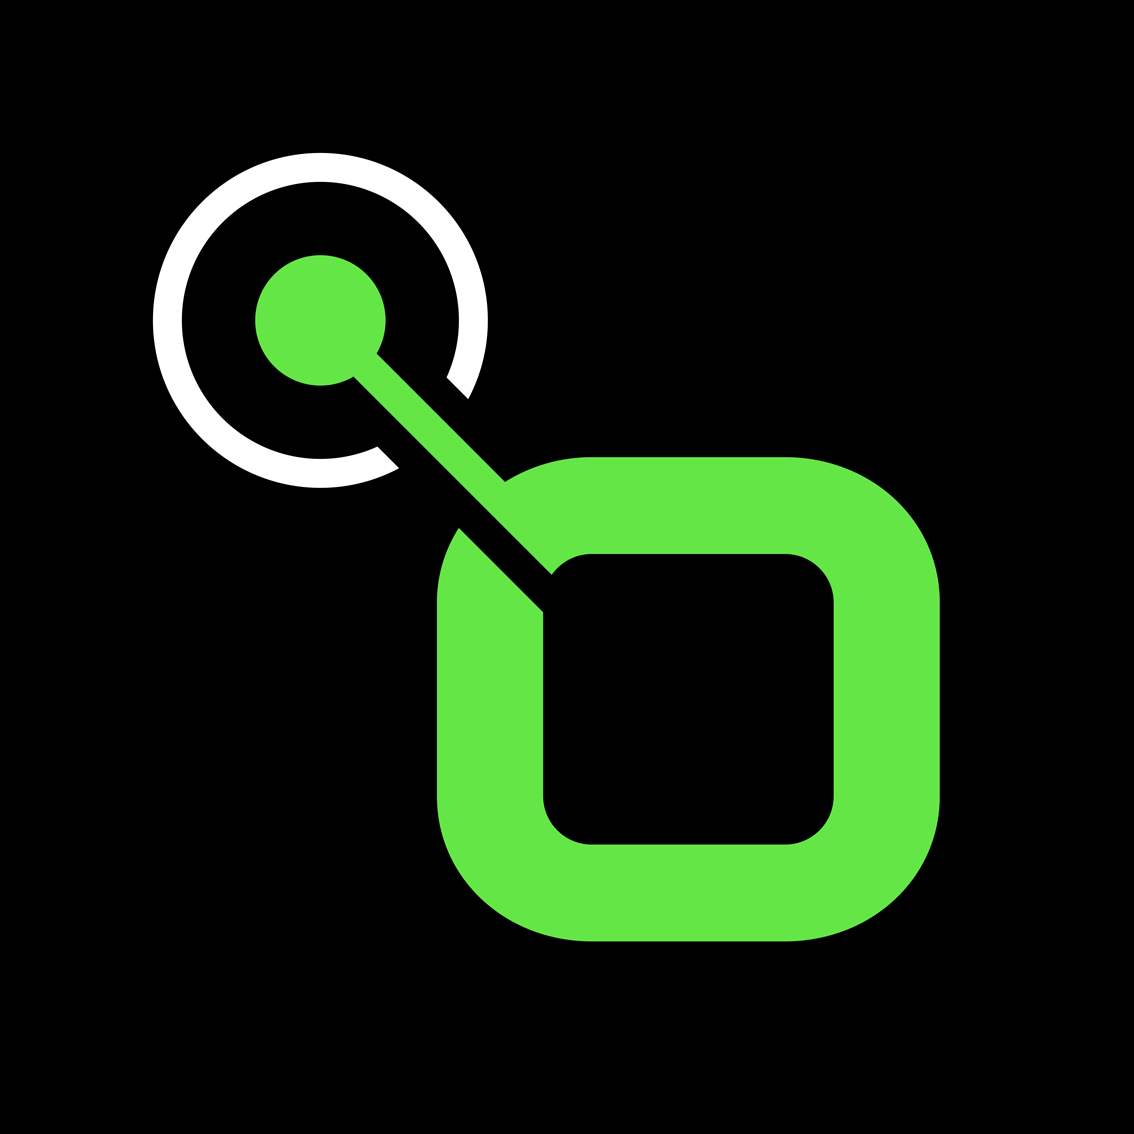 Das Radio.de Logo in grün, auf schwarzem Hintergrund